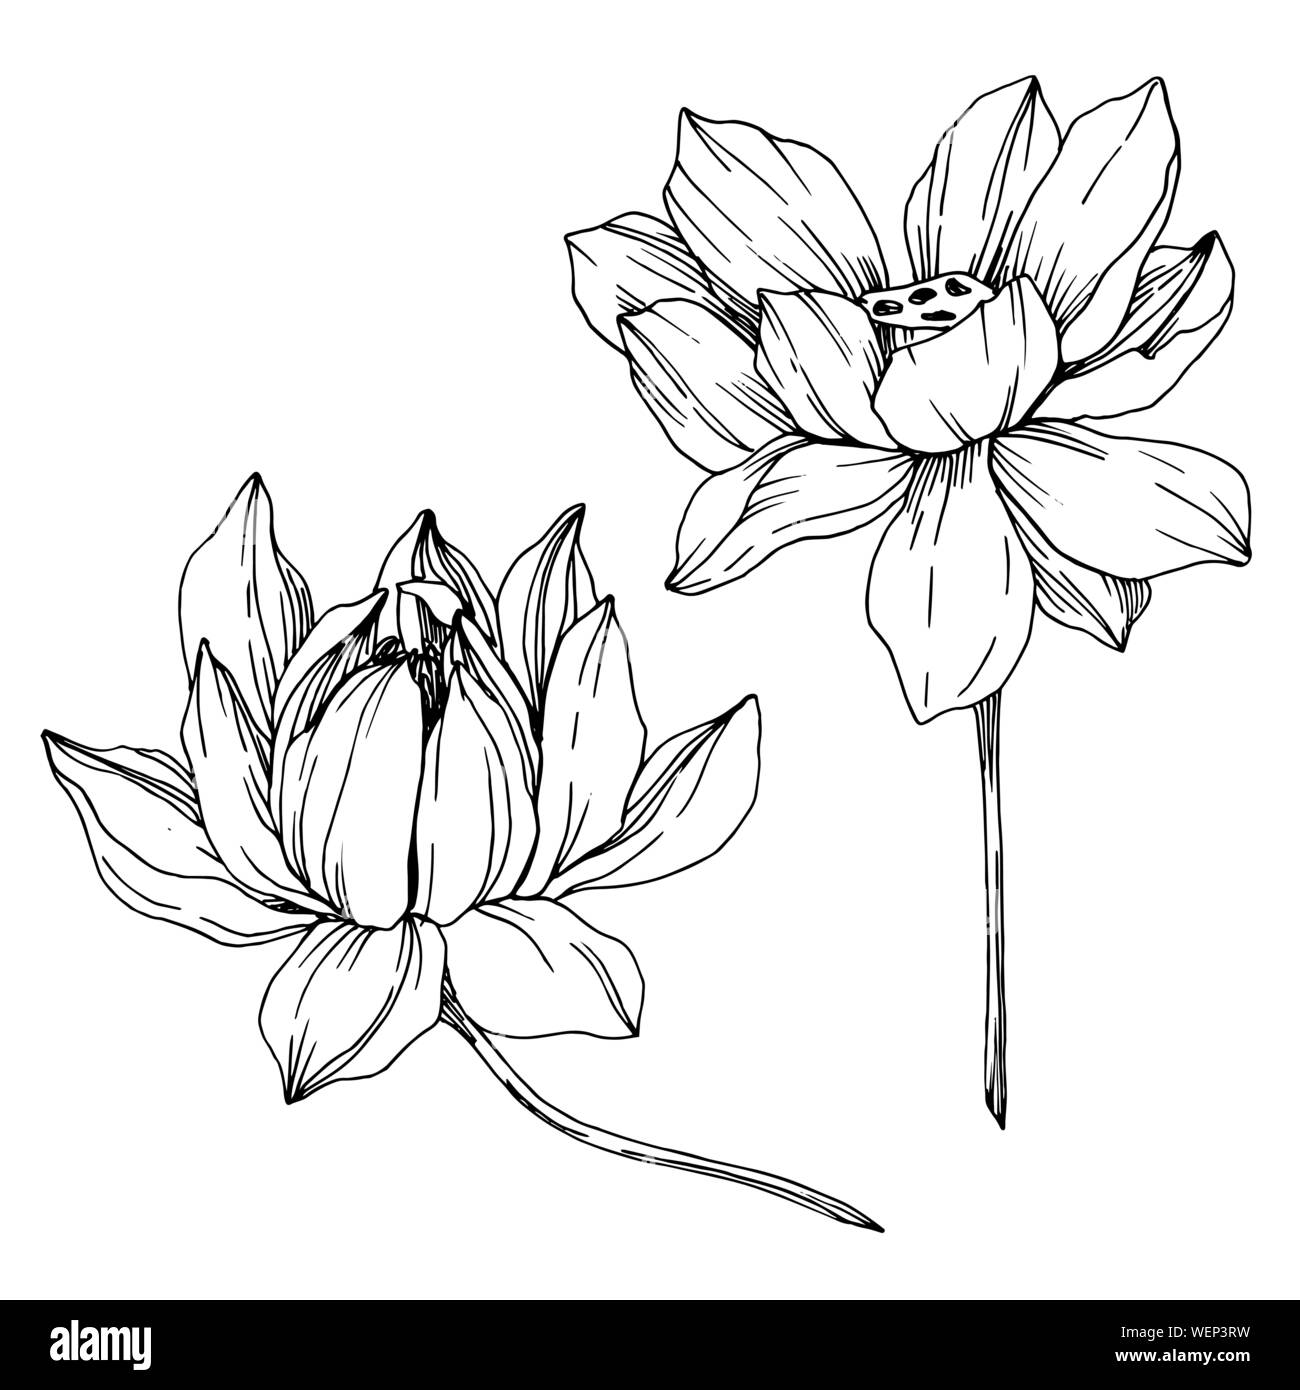 Vektor Lotus Blumen botanischen Blumen. Schwarz und weiß eingraviert Tinte Art isoliert Lotus Abbildung Element. Stock Vektor